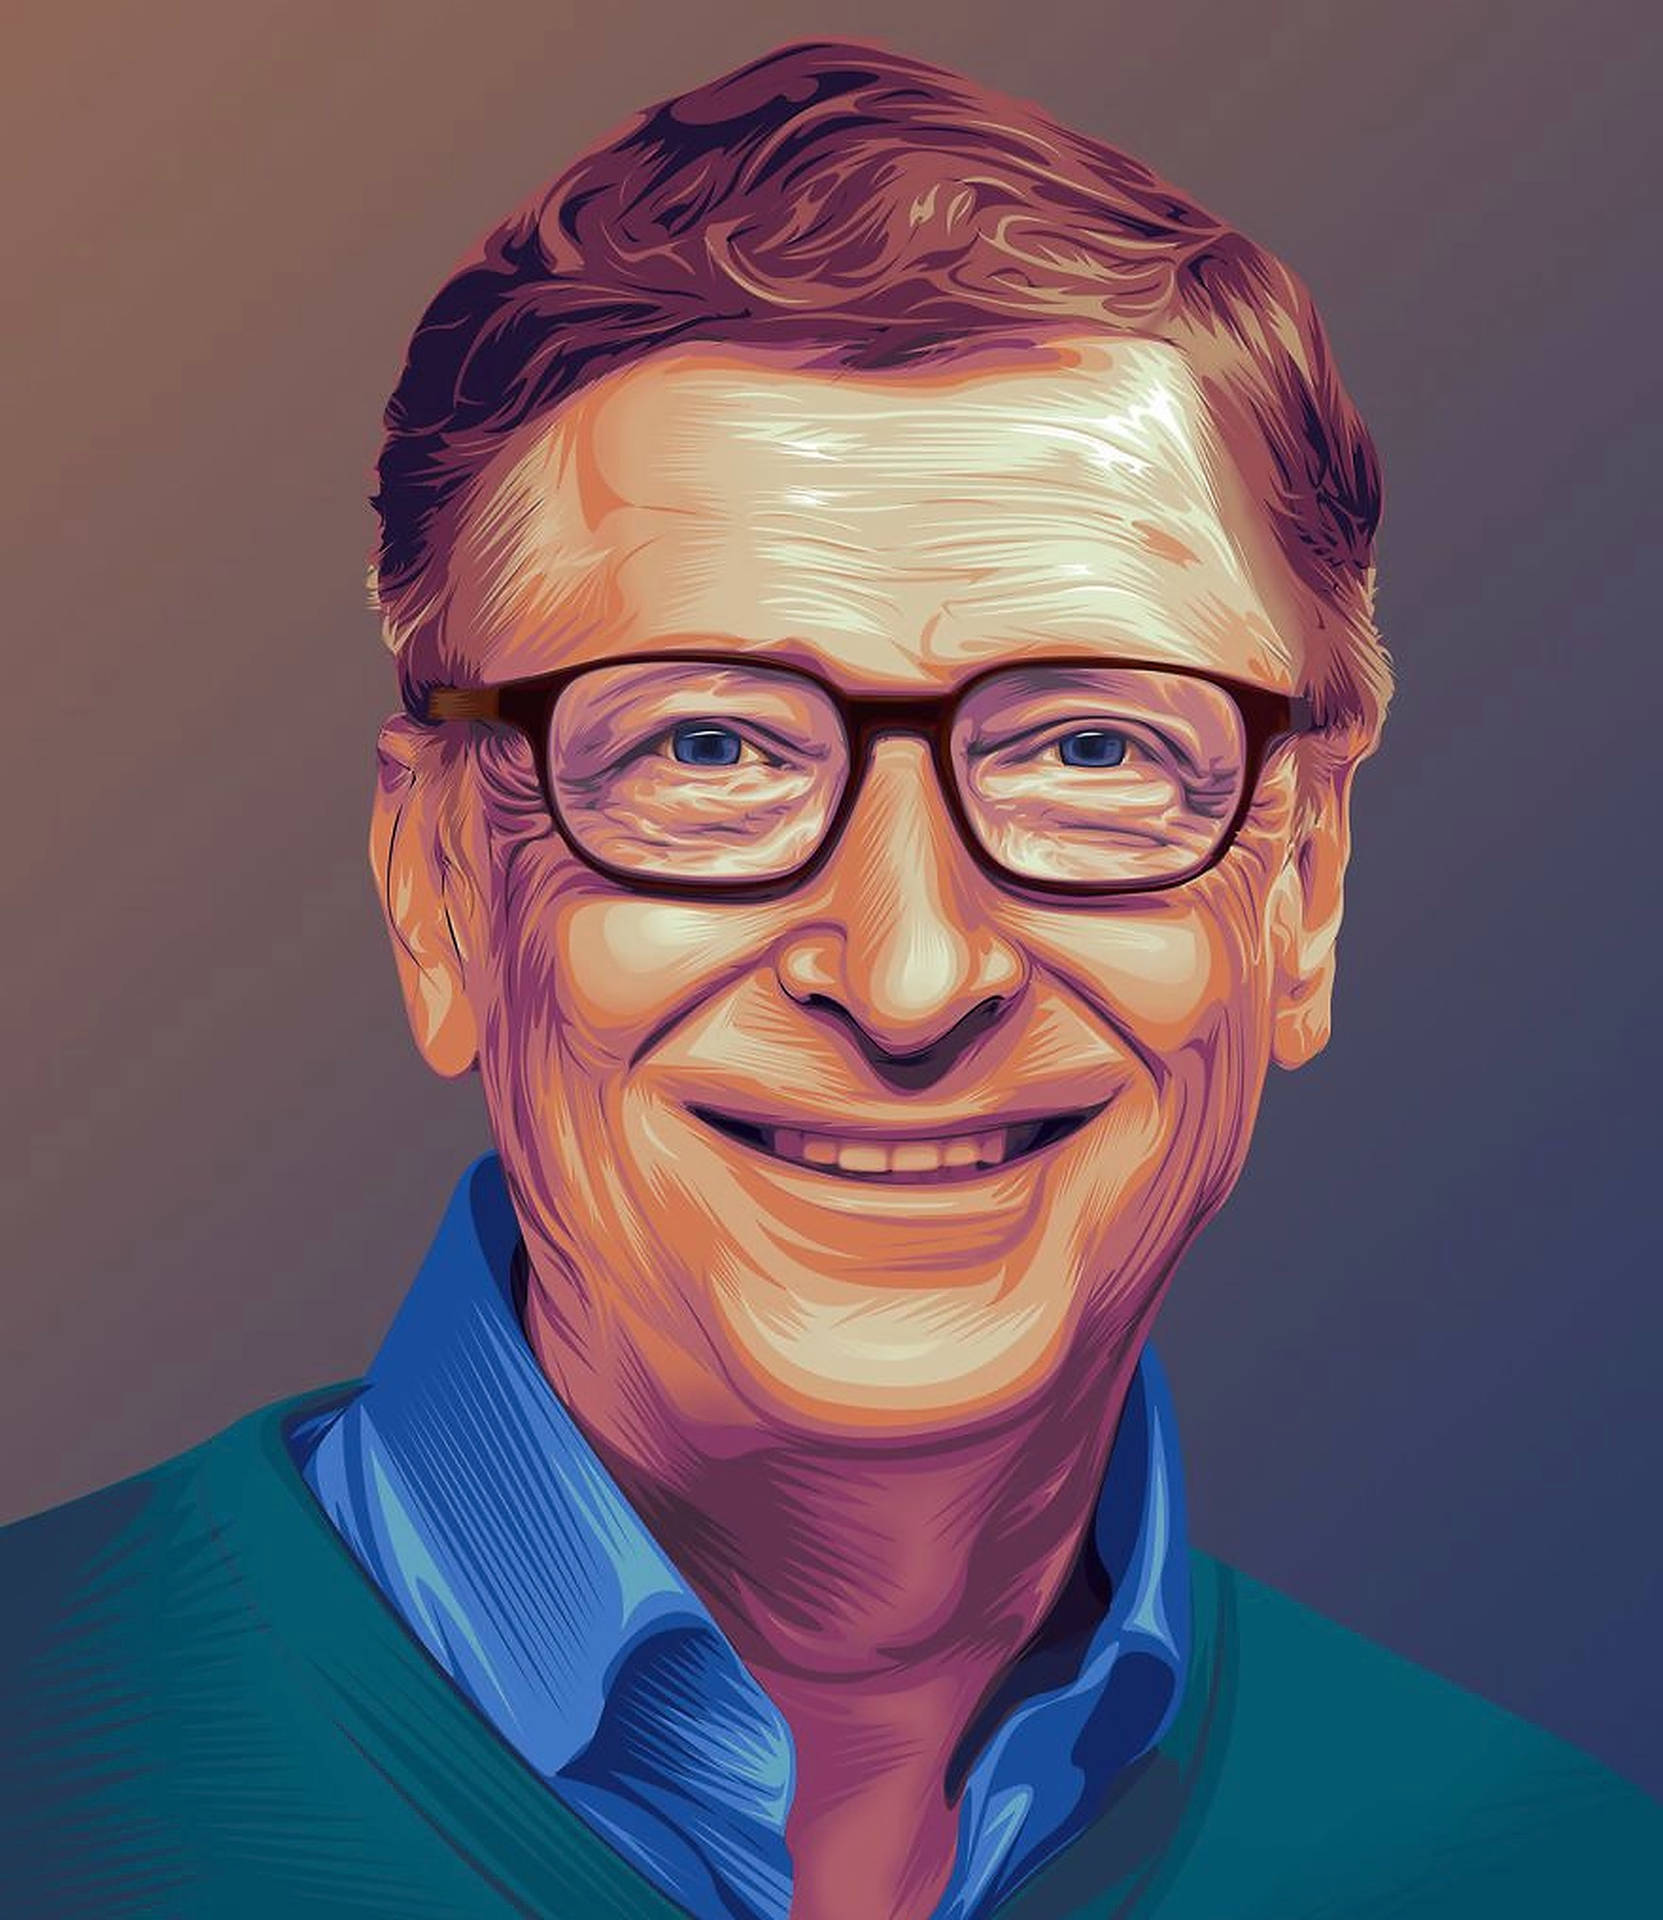 Bill Gates Realistic Digital Art Wallpaper